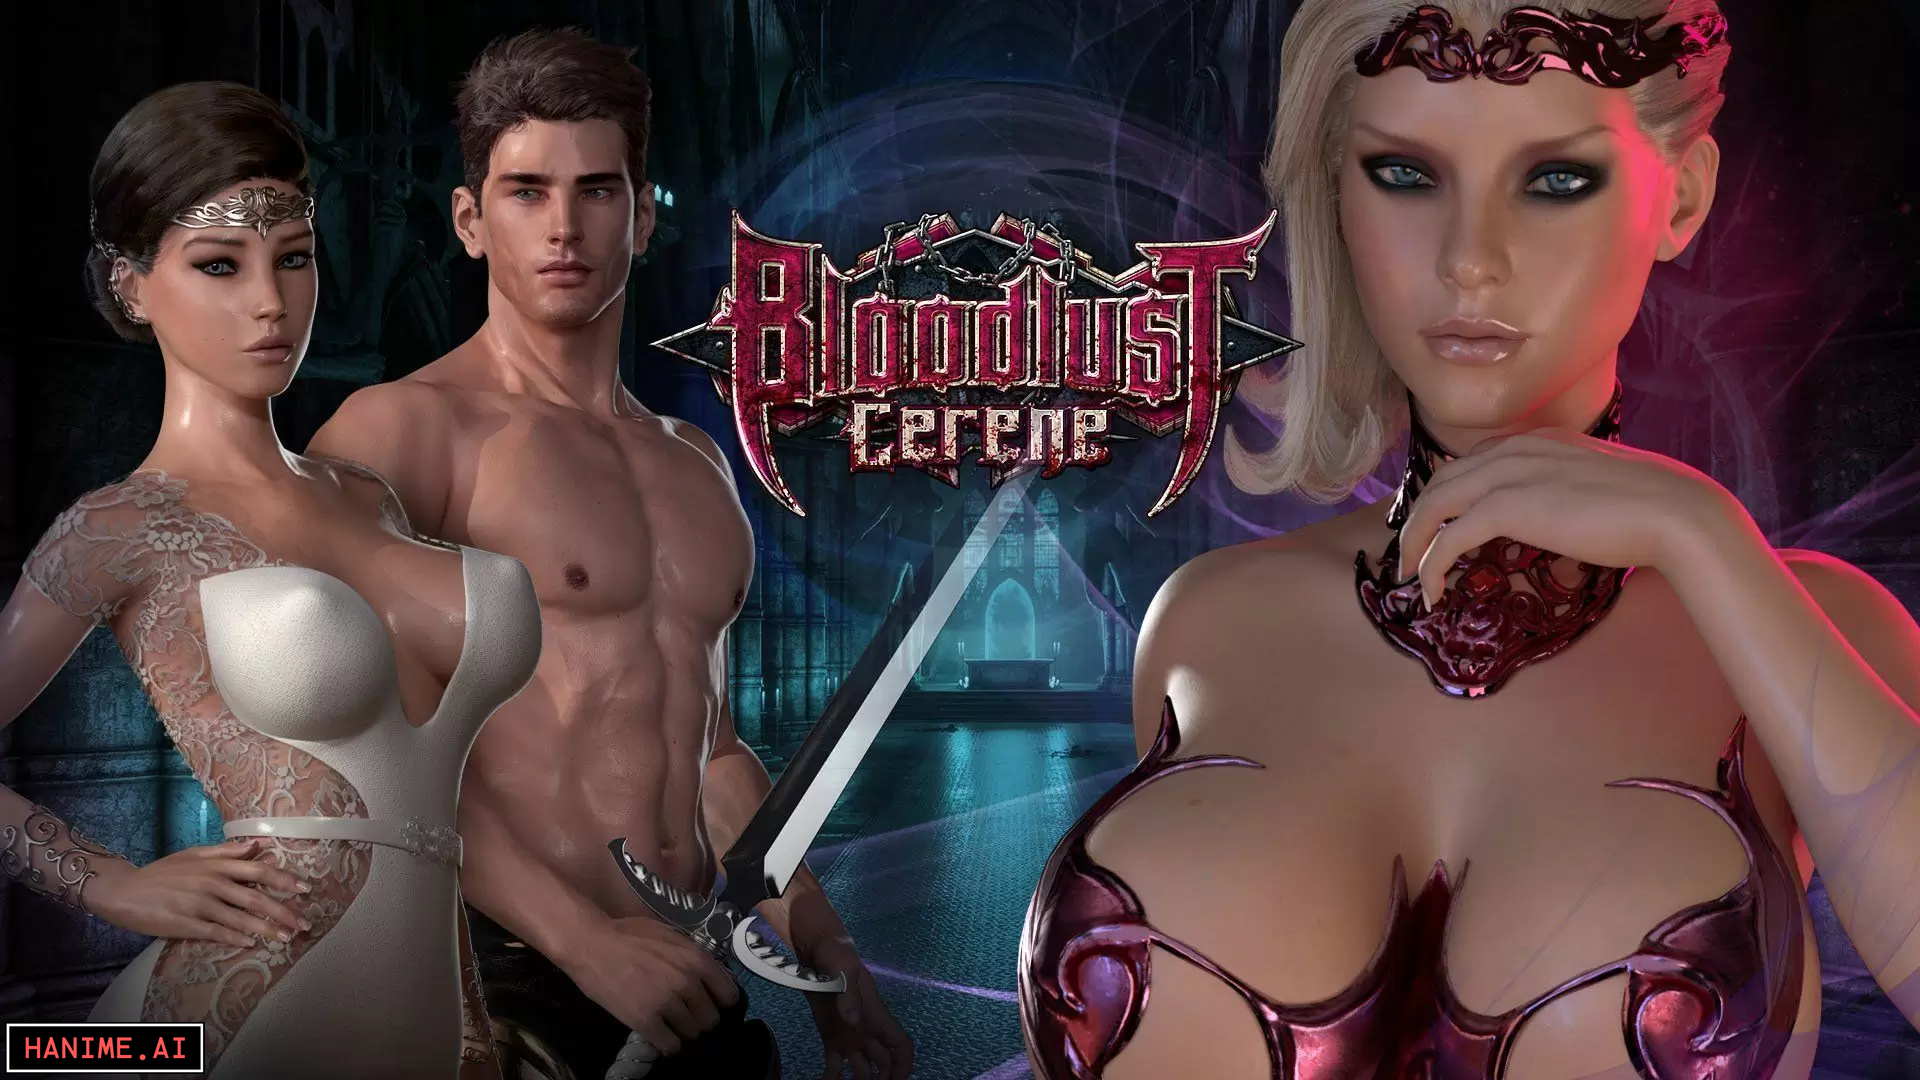 Bloodlust Cerene - 3D porn game